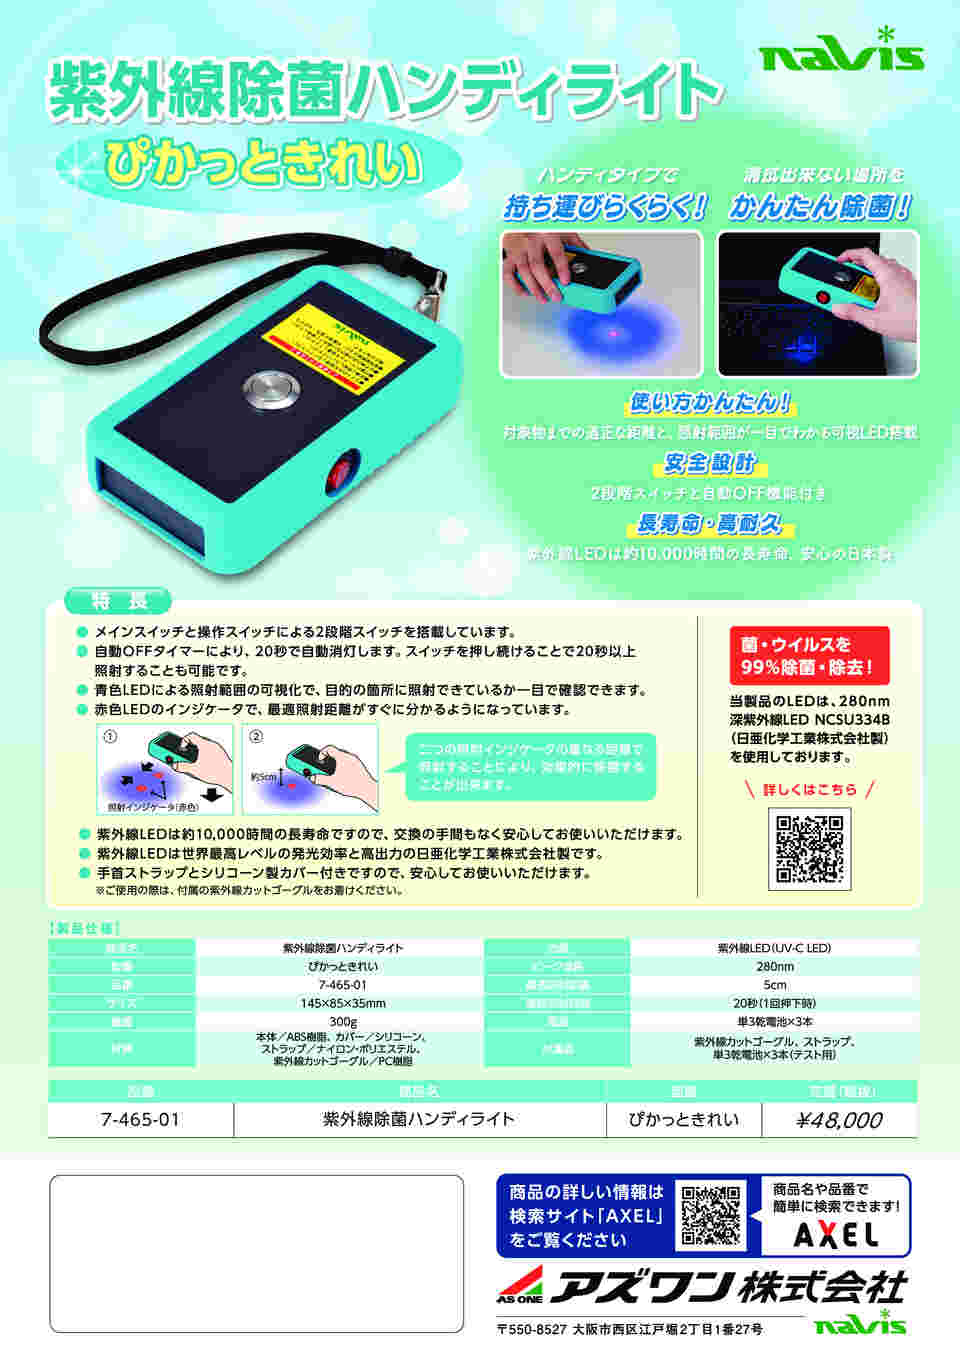 7-465-01 紫外線除菌ハンディライト ぴかっときれい ブルー 【AXEL